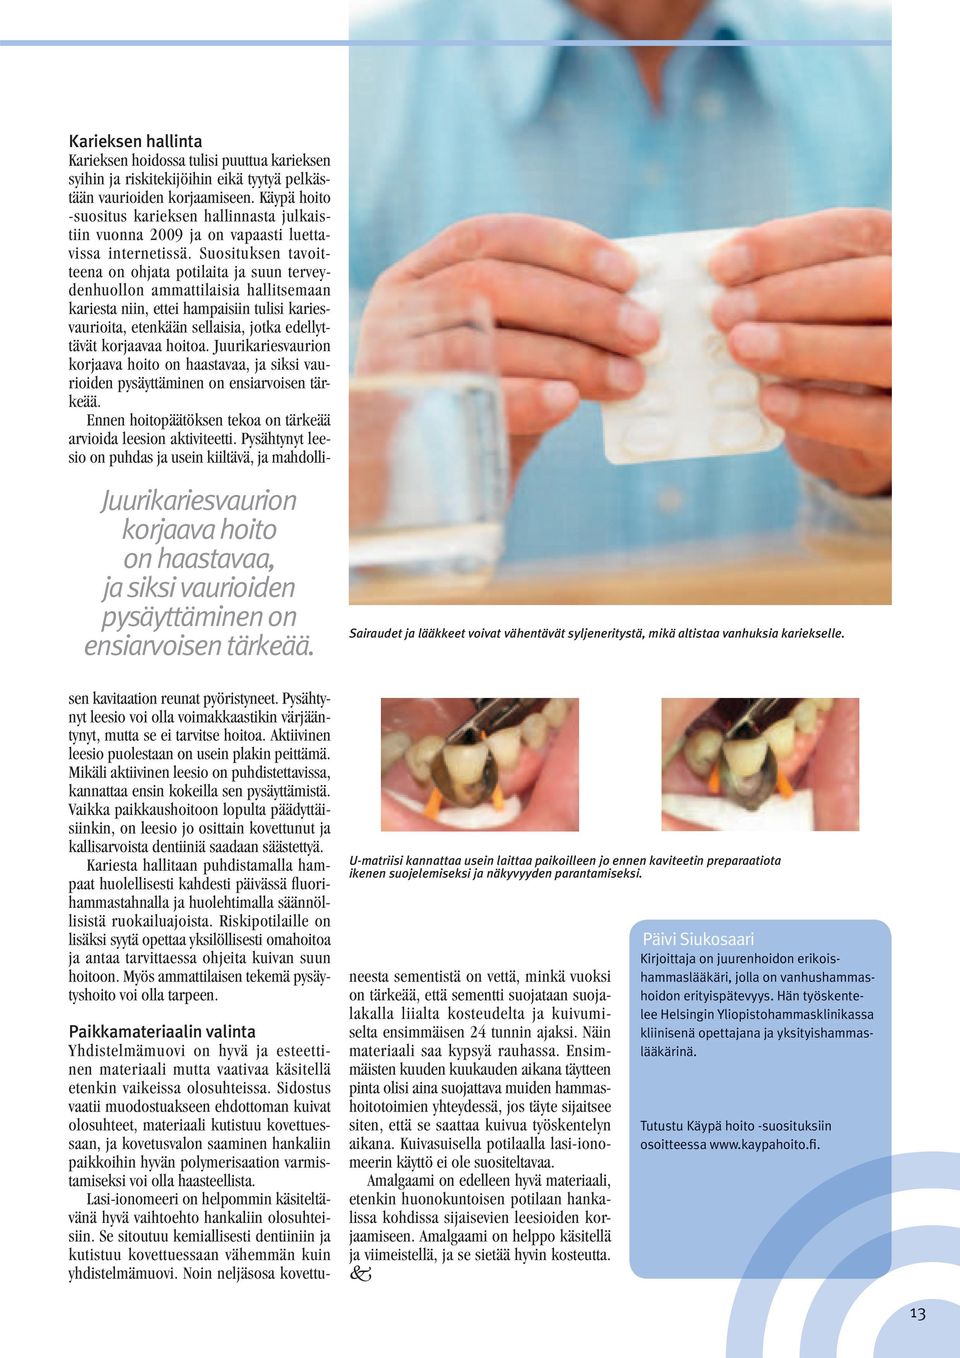 Käypä hoito -suositus karieksen hallinnasta julkaistiin vuonna 2009 ja on vapaasti luettavissa internetissä.